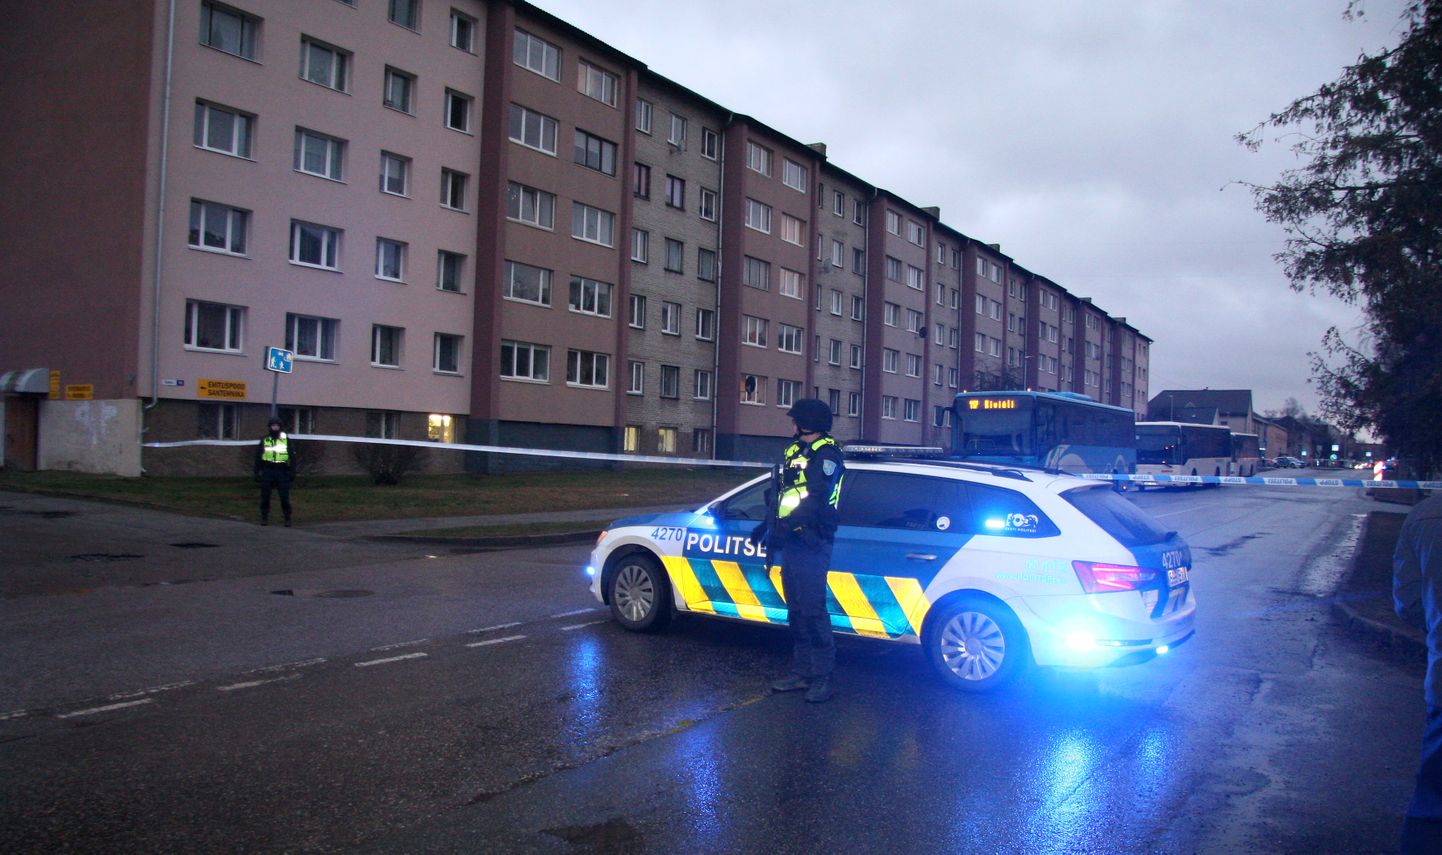 Neljapäeva õhtul piiras politsei lintidega Kalevi tänav 16 asuva maja, samuti linna üheks peatänavaks oleva Kalevi tänava lõigu, kus bussid vigastada said.